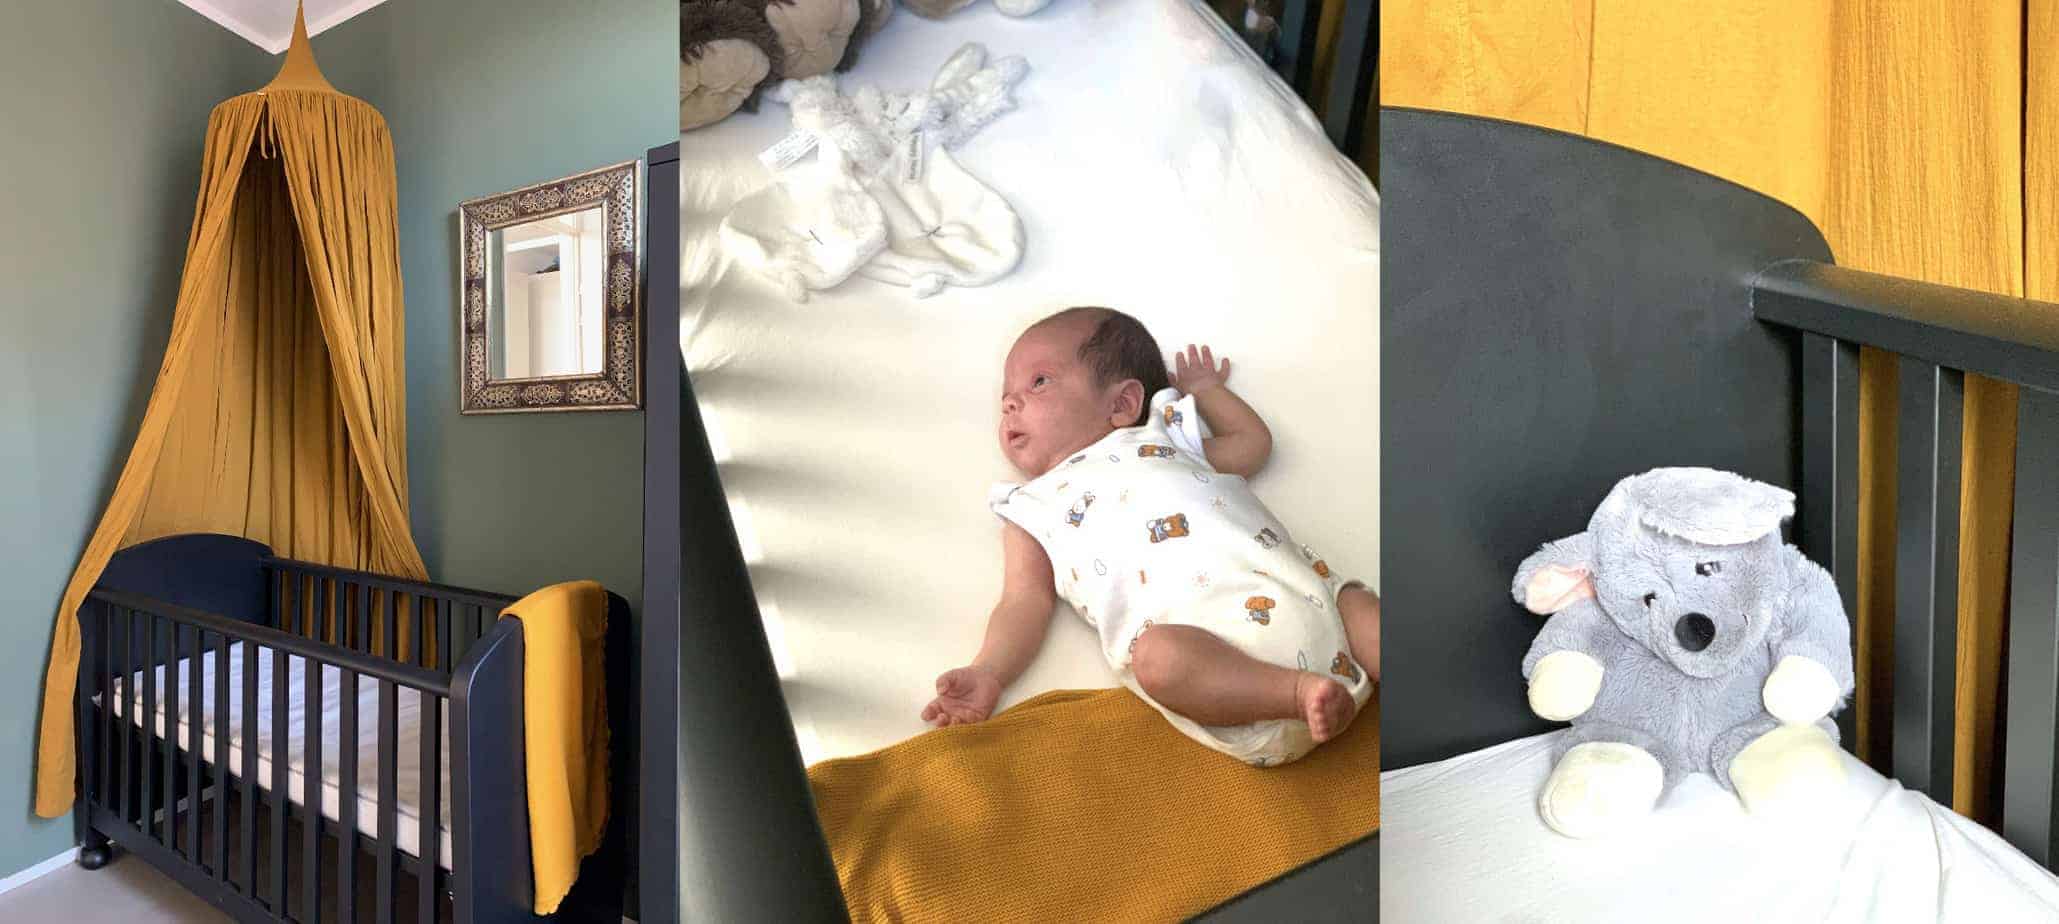 De leukste babykamers (en waarom ik daar mee bezig ben 😉)